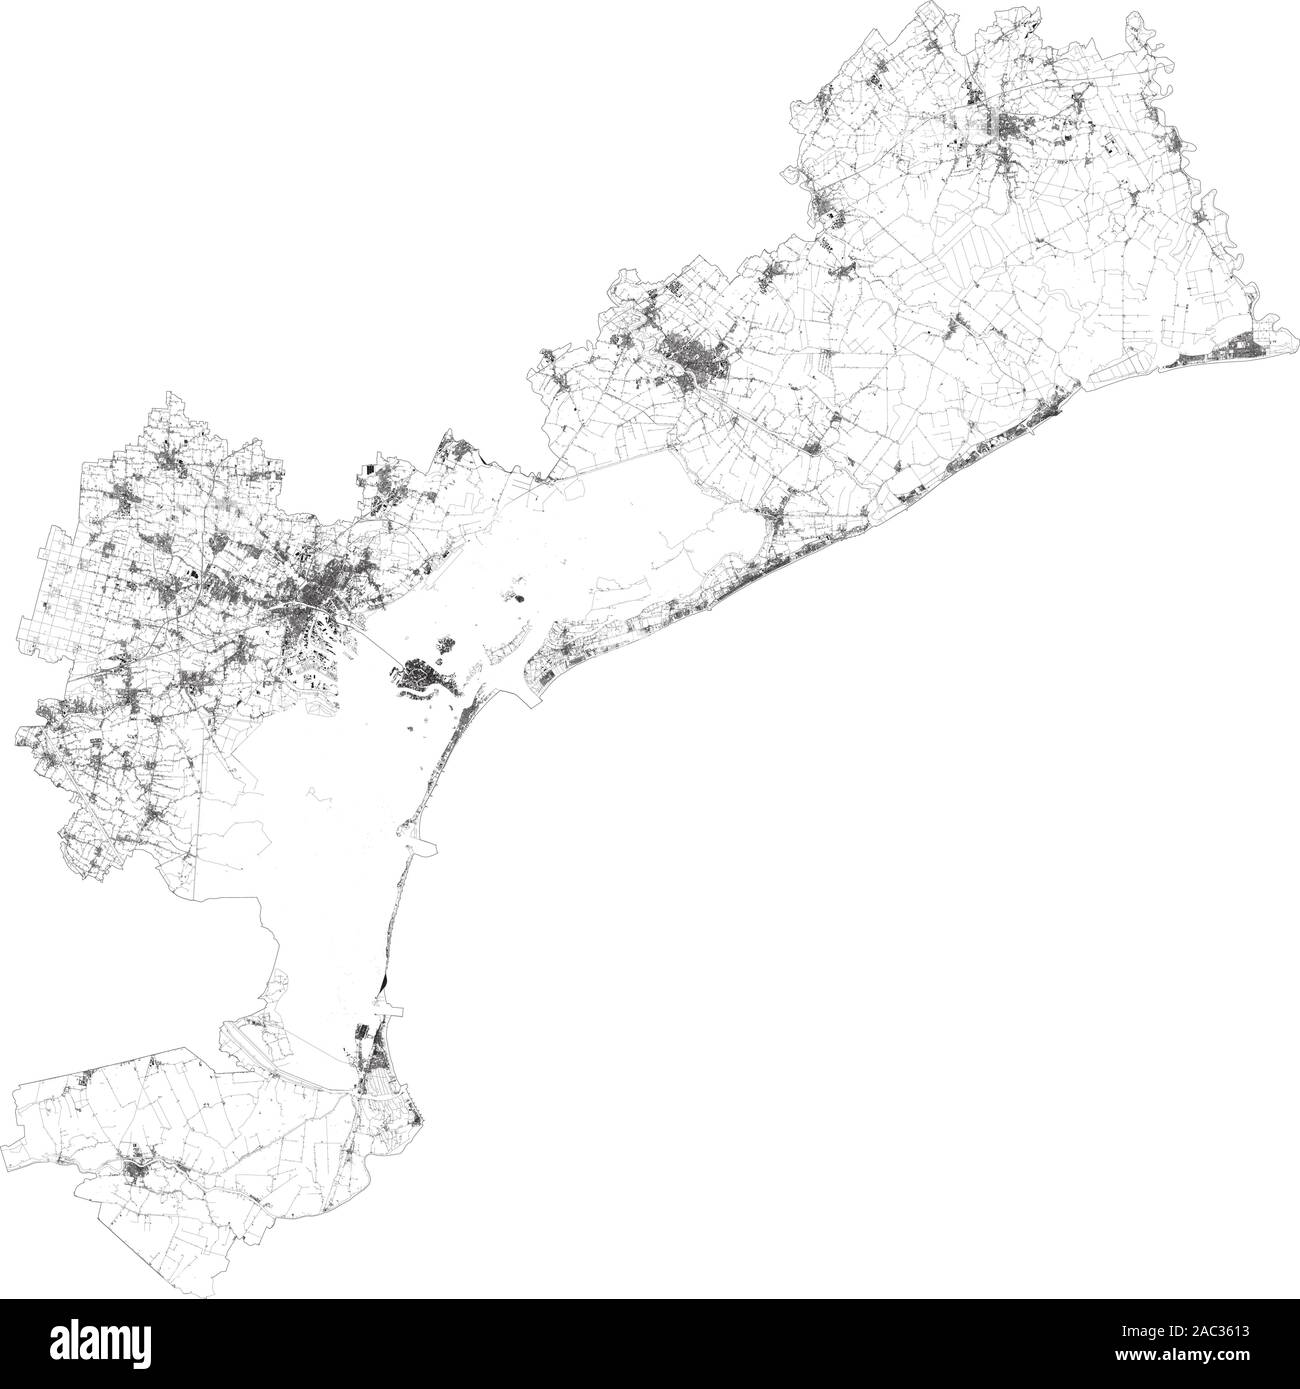 Satelliten Karte von Venedig und Umgebung. Venetien, Italien. Karte Straßen, Straßen und Autobahnen, Eisenbahnlinien, Flüsse Stock Vektor